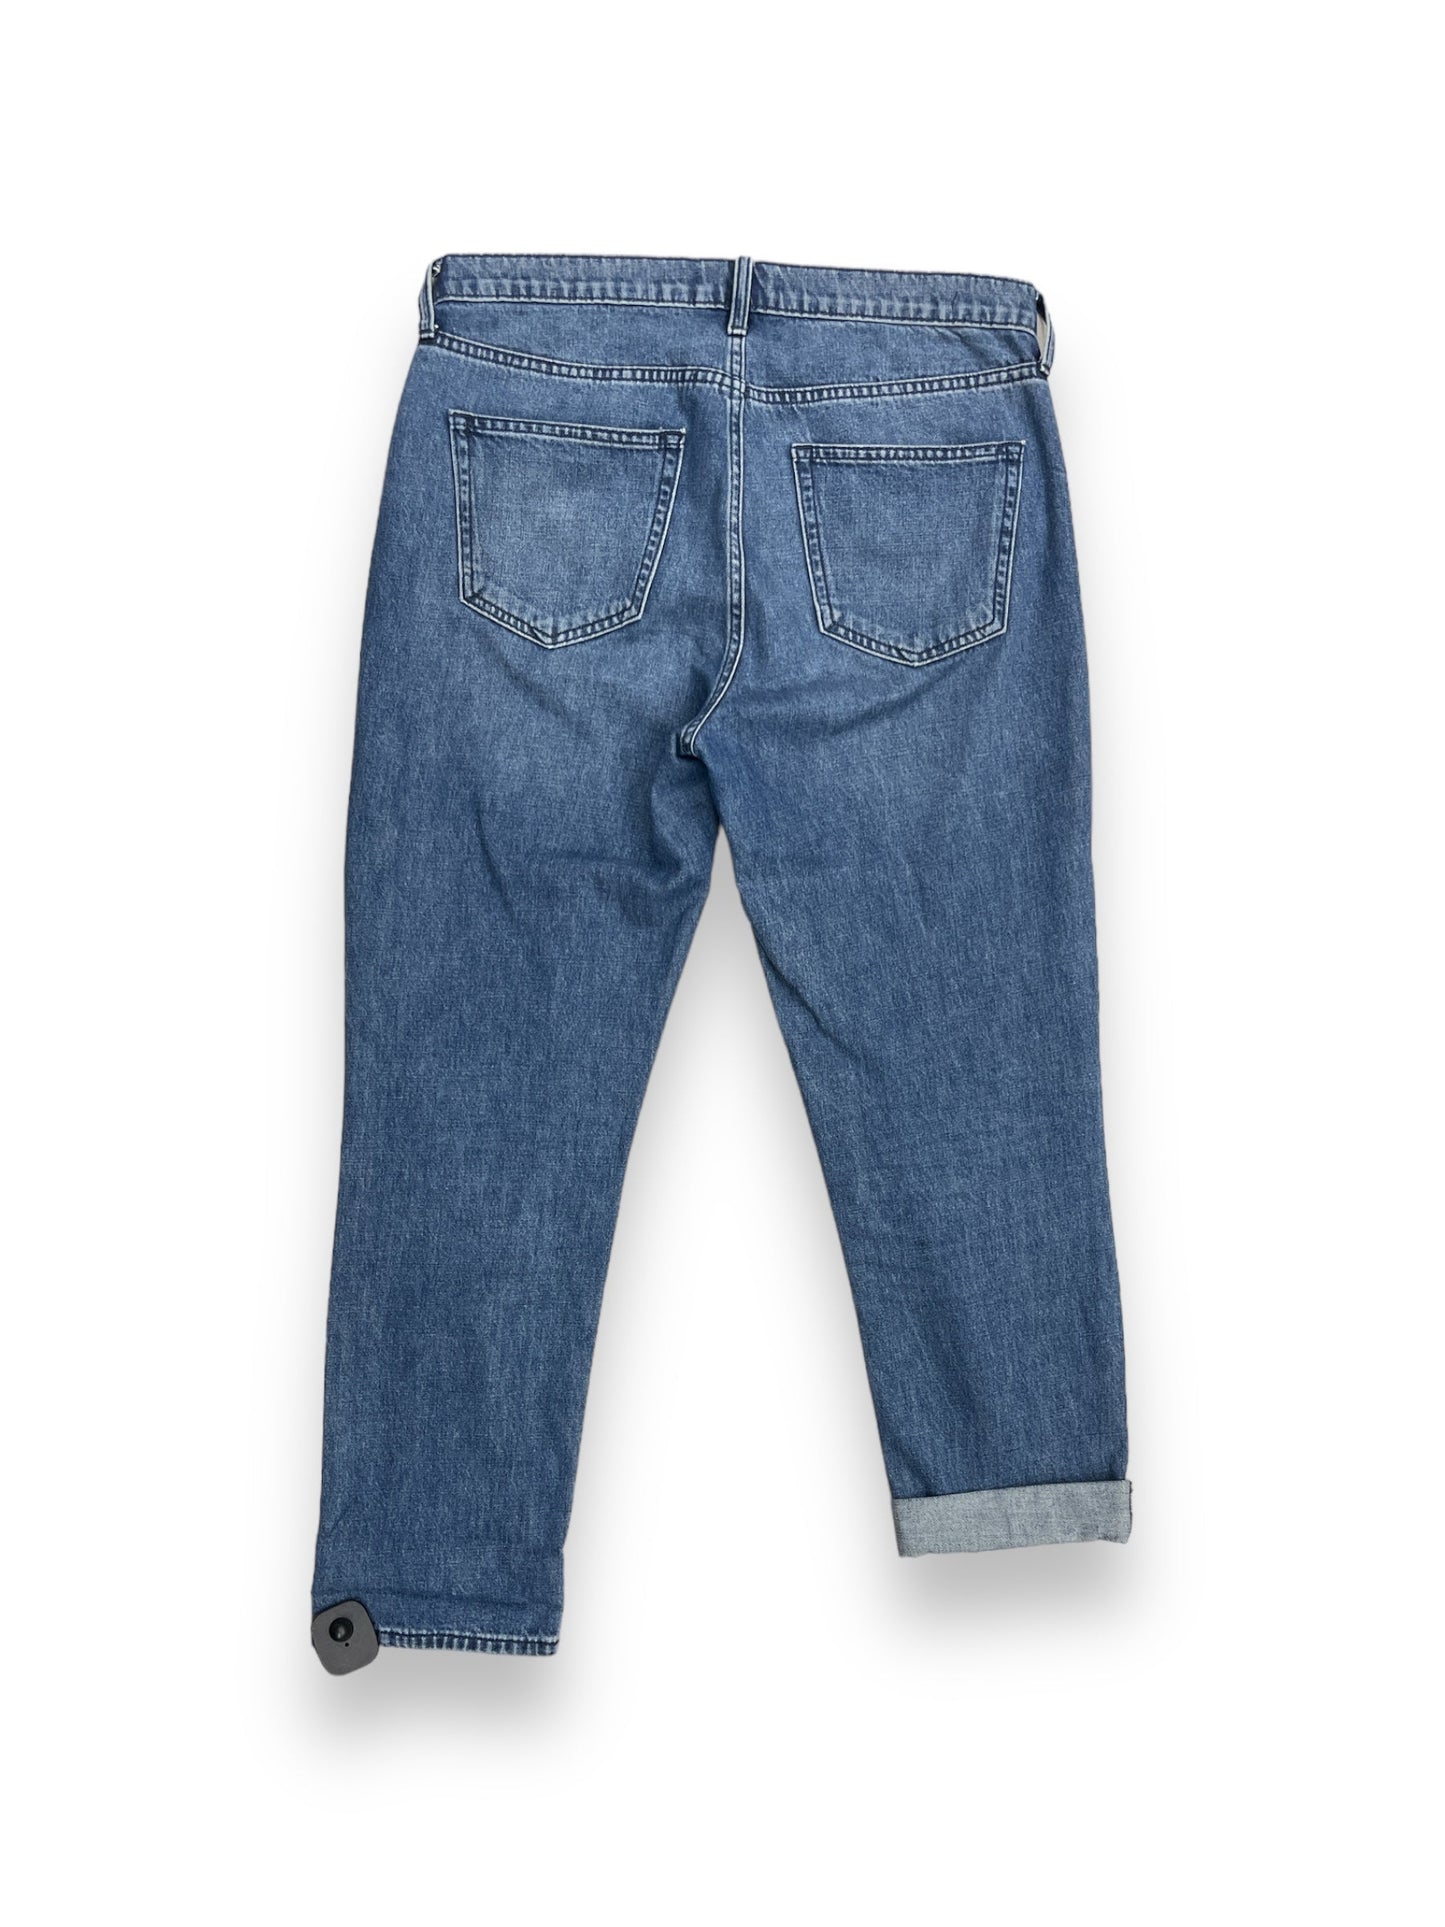 Jeans Boyfriend By Gap  Size: 6